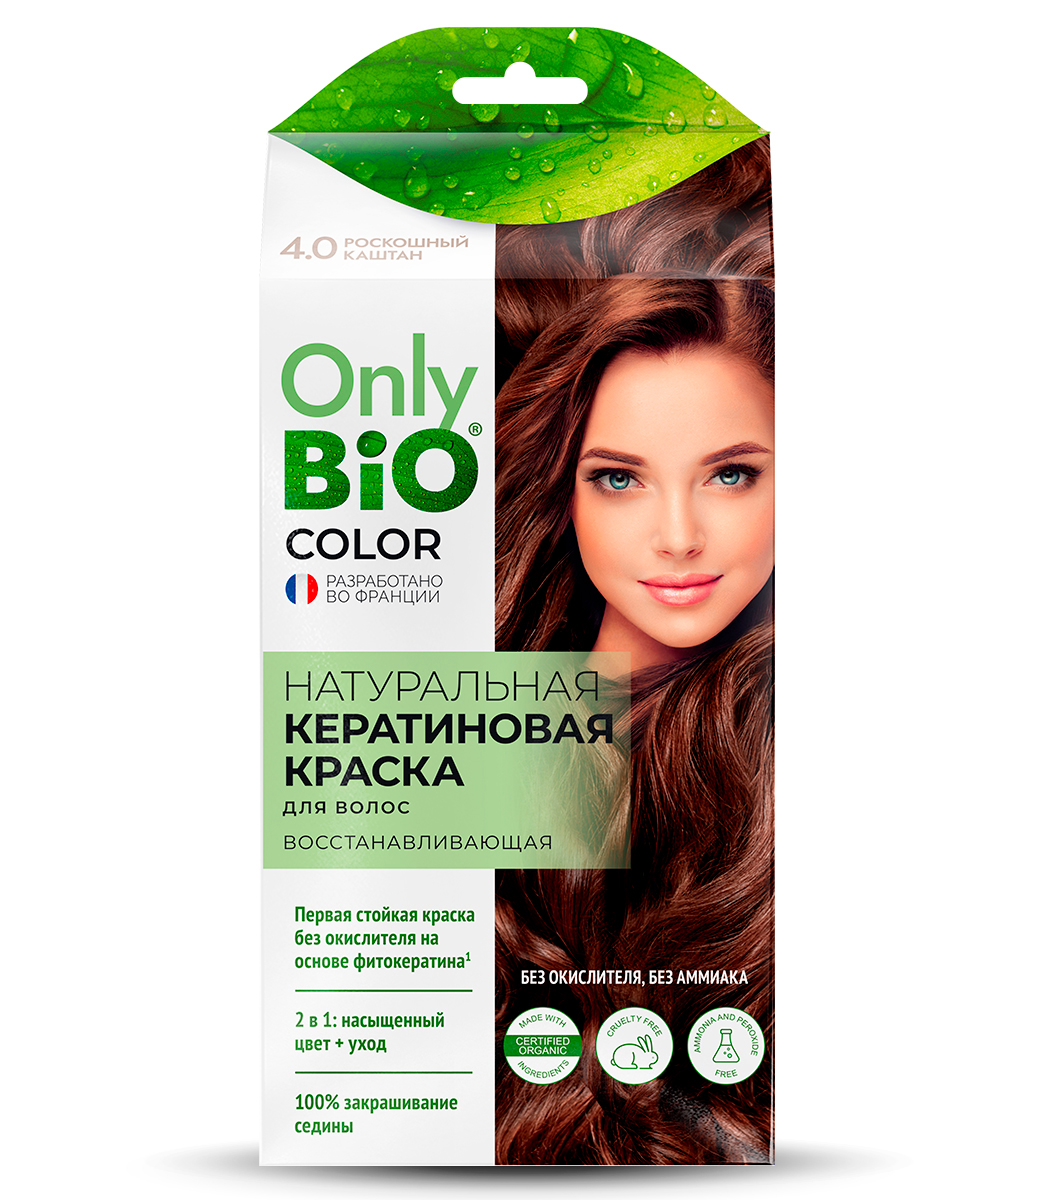 картинка Only Bio Стойкая крем-краска для волос Кератиновая, тон 4.0 Роскошный каштан